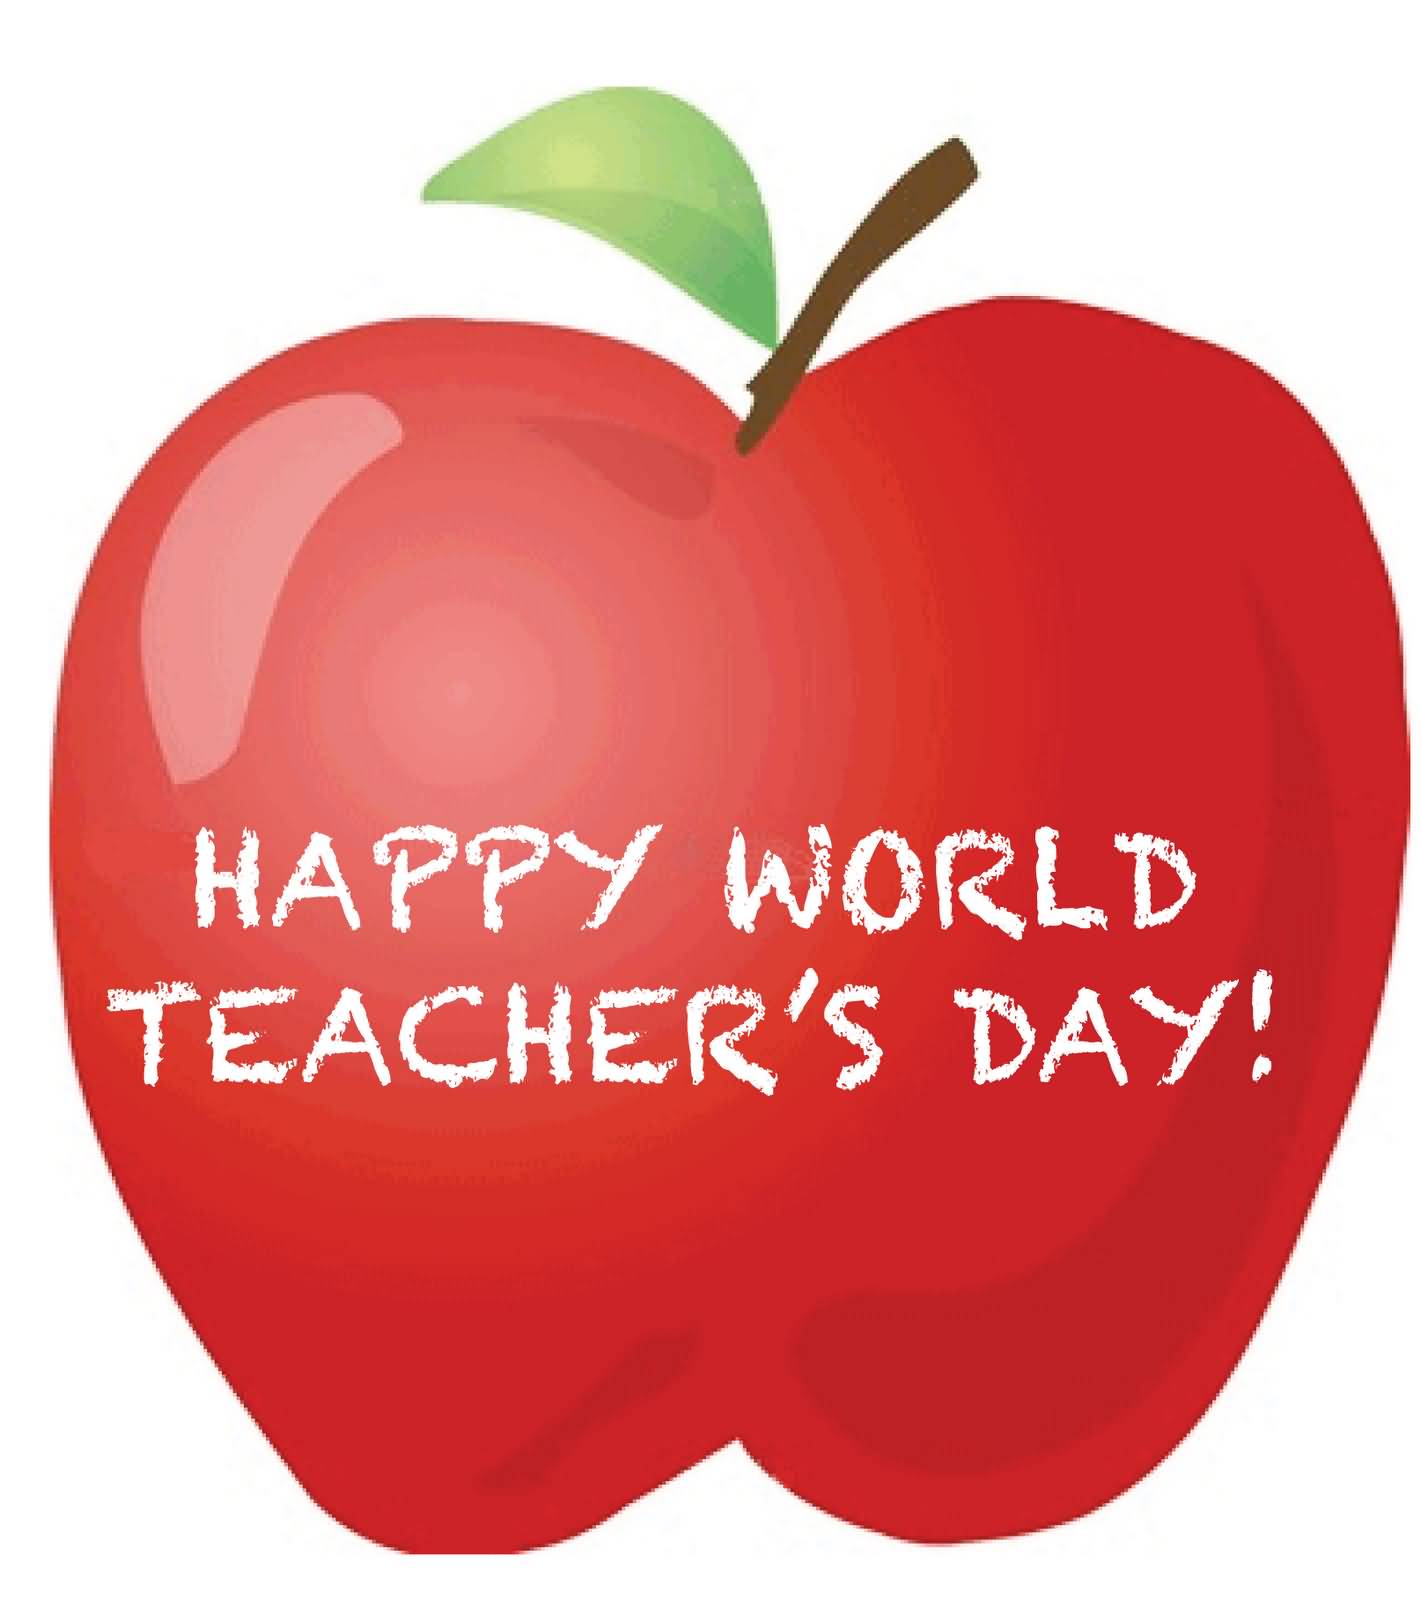 Happy World Teachers Day Apple Illustration